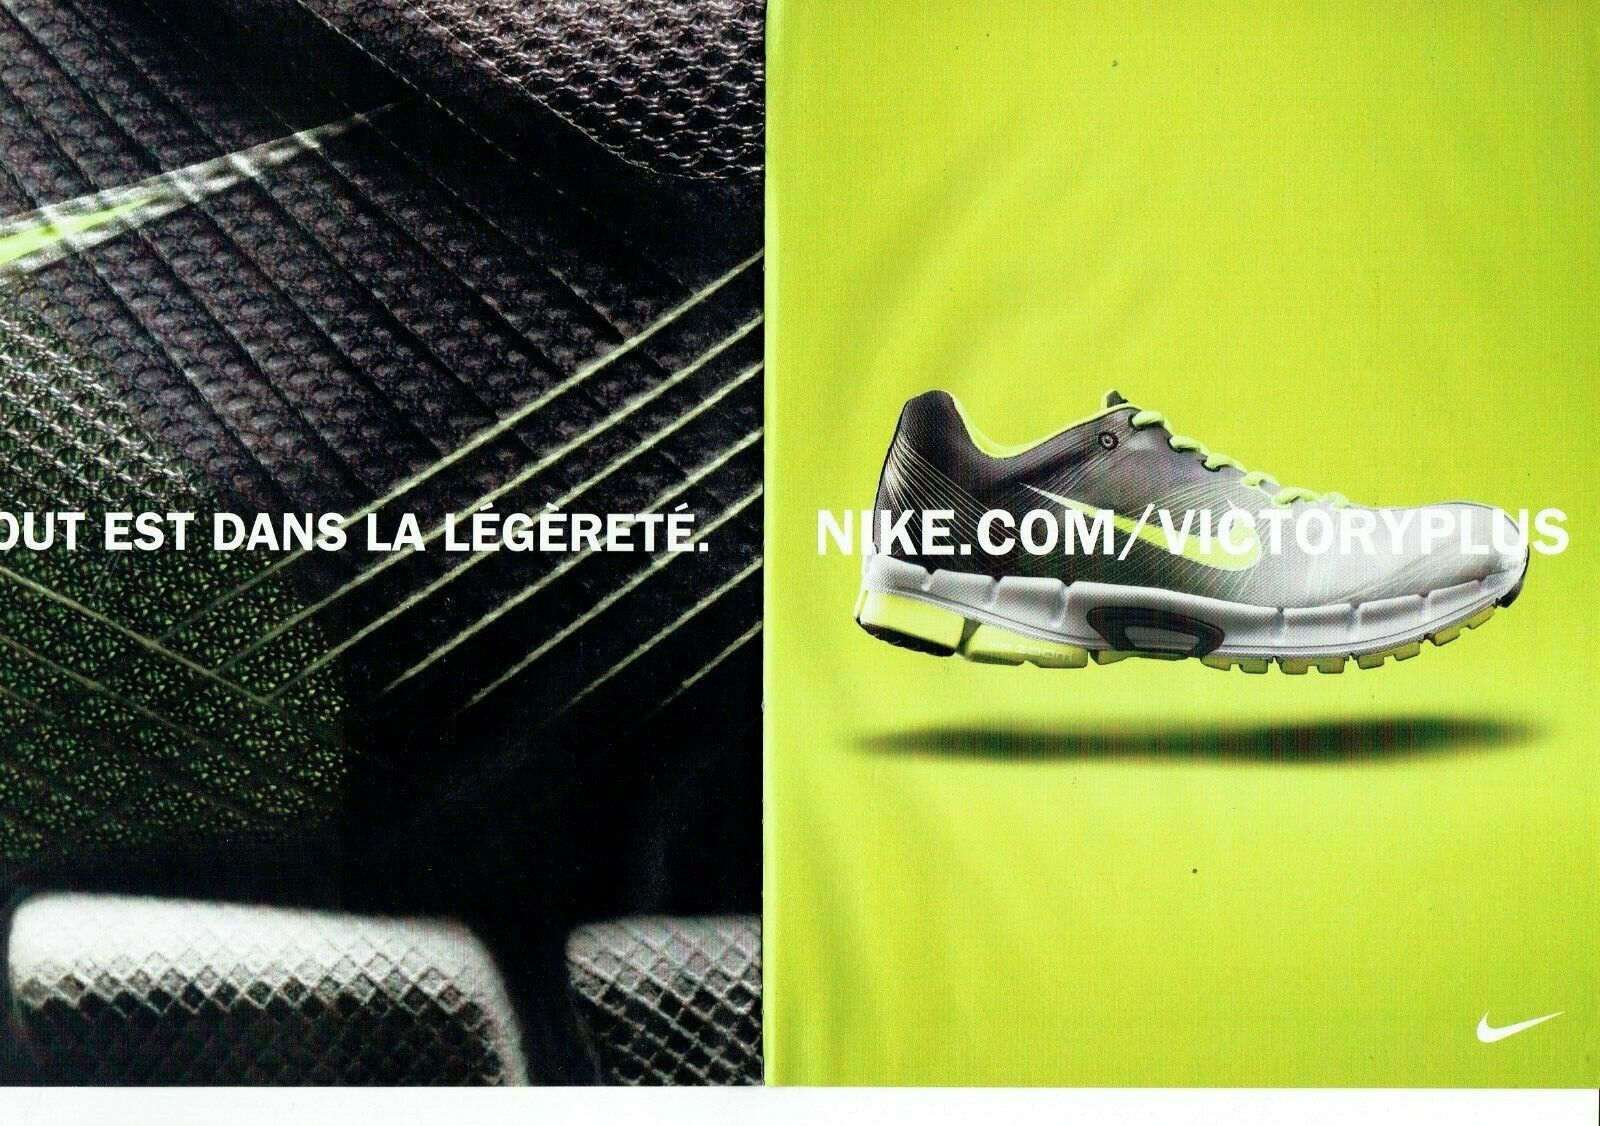 2008 Nike Advertising 089 Sneakers (4pcs) victoryplus Hyperdunk Advertising Advertisement